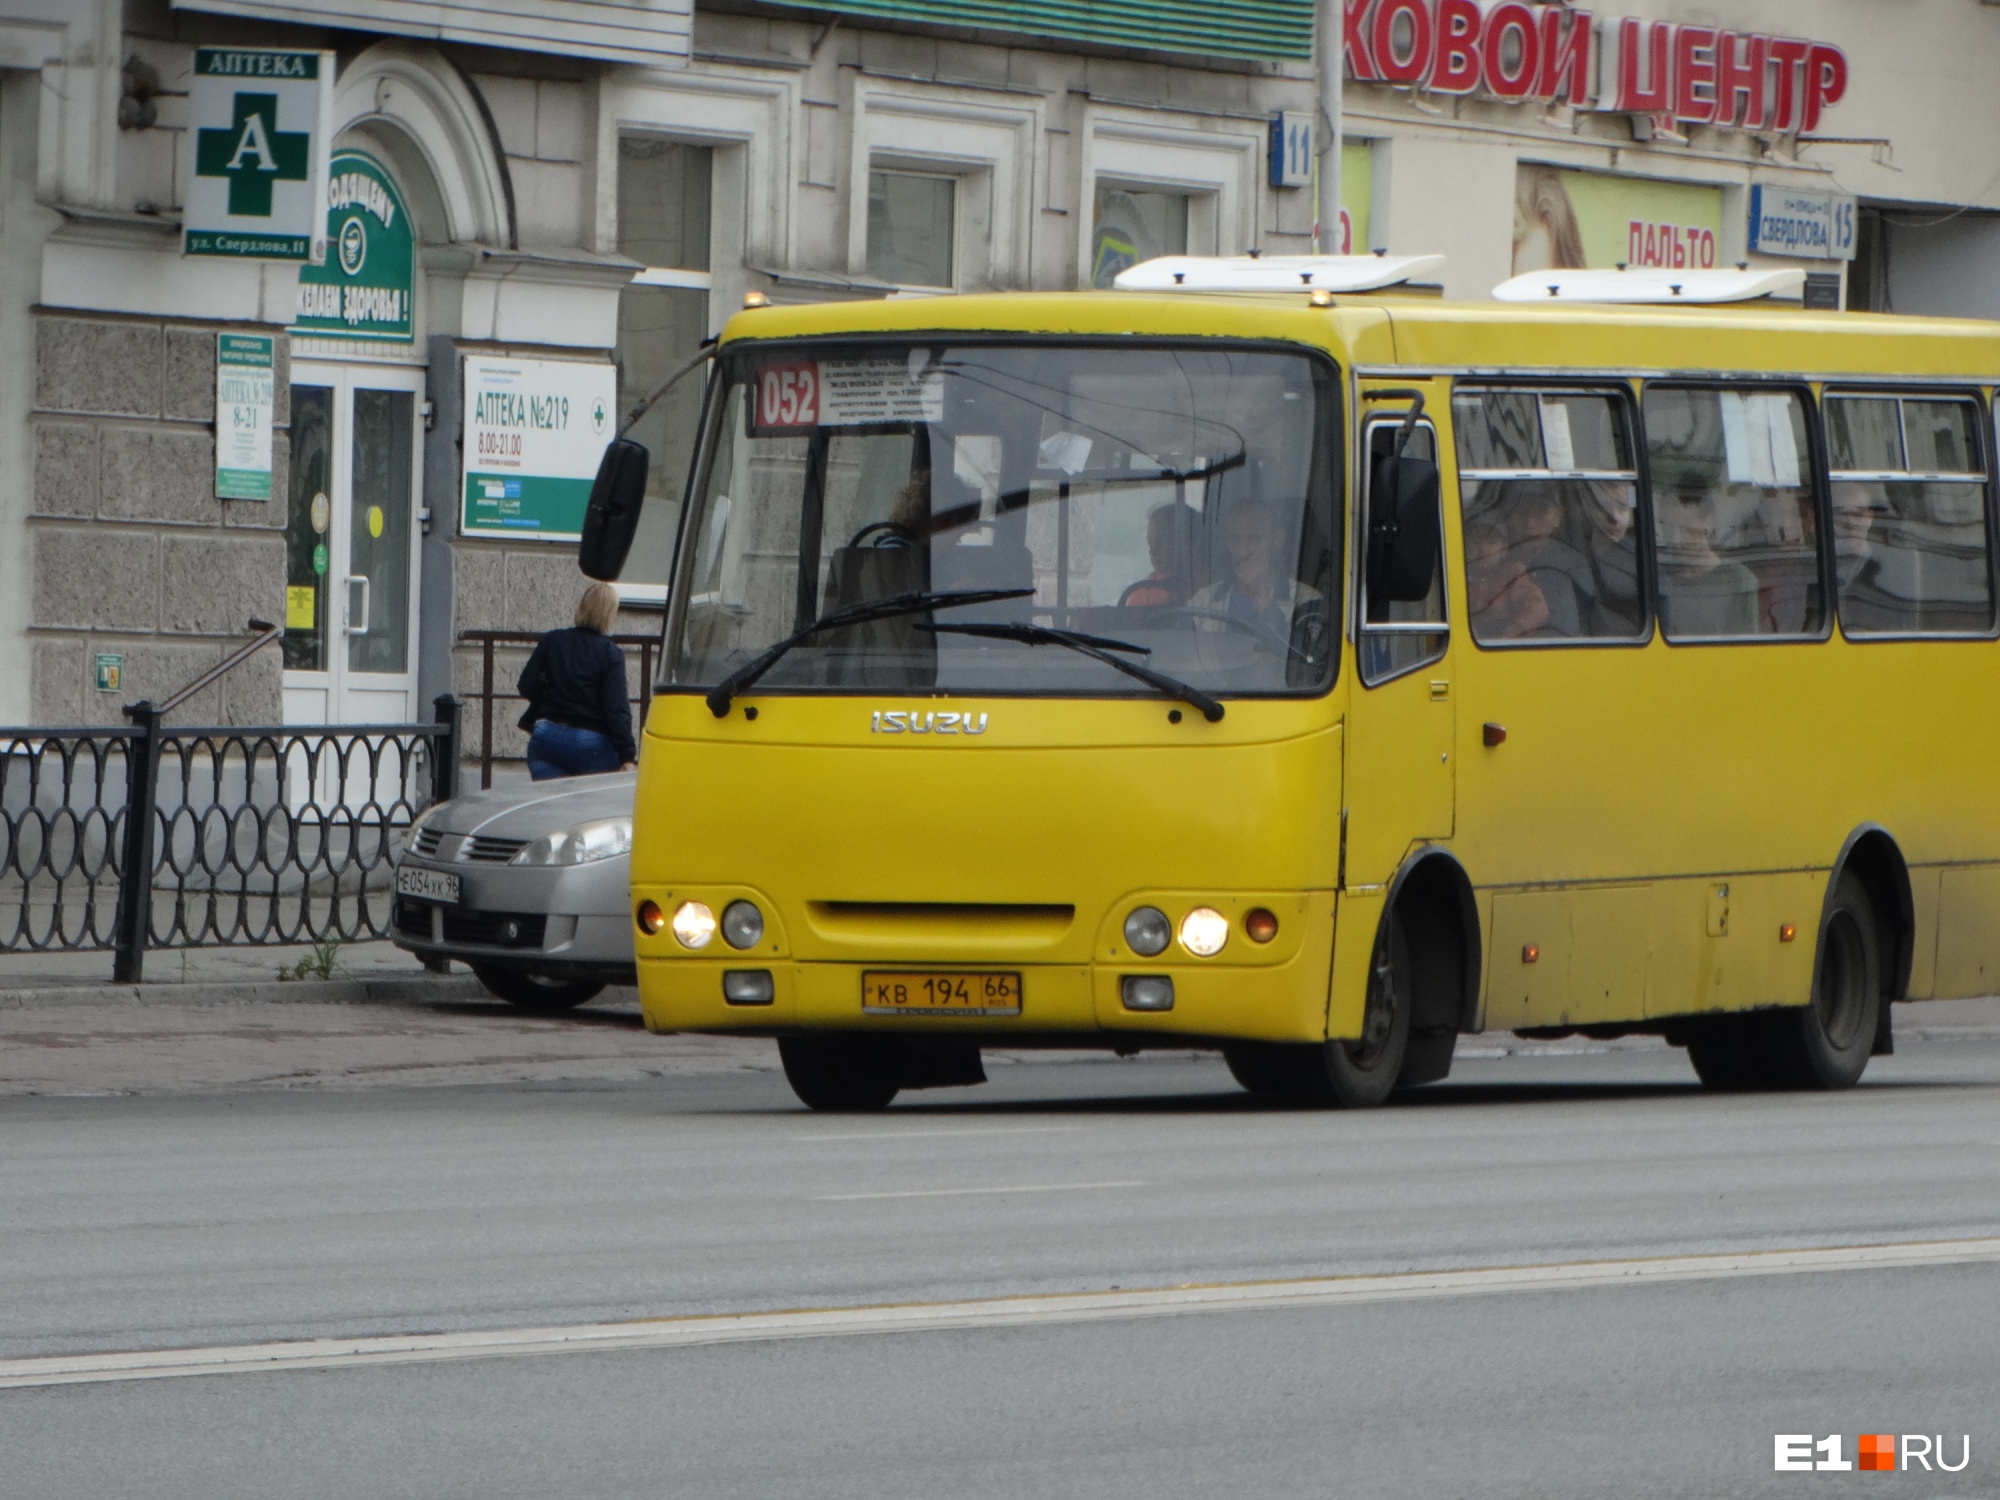 Жители Краснолесья получат еще один автобусный маршрут